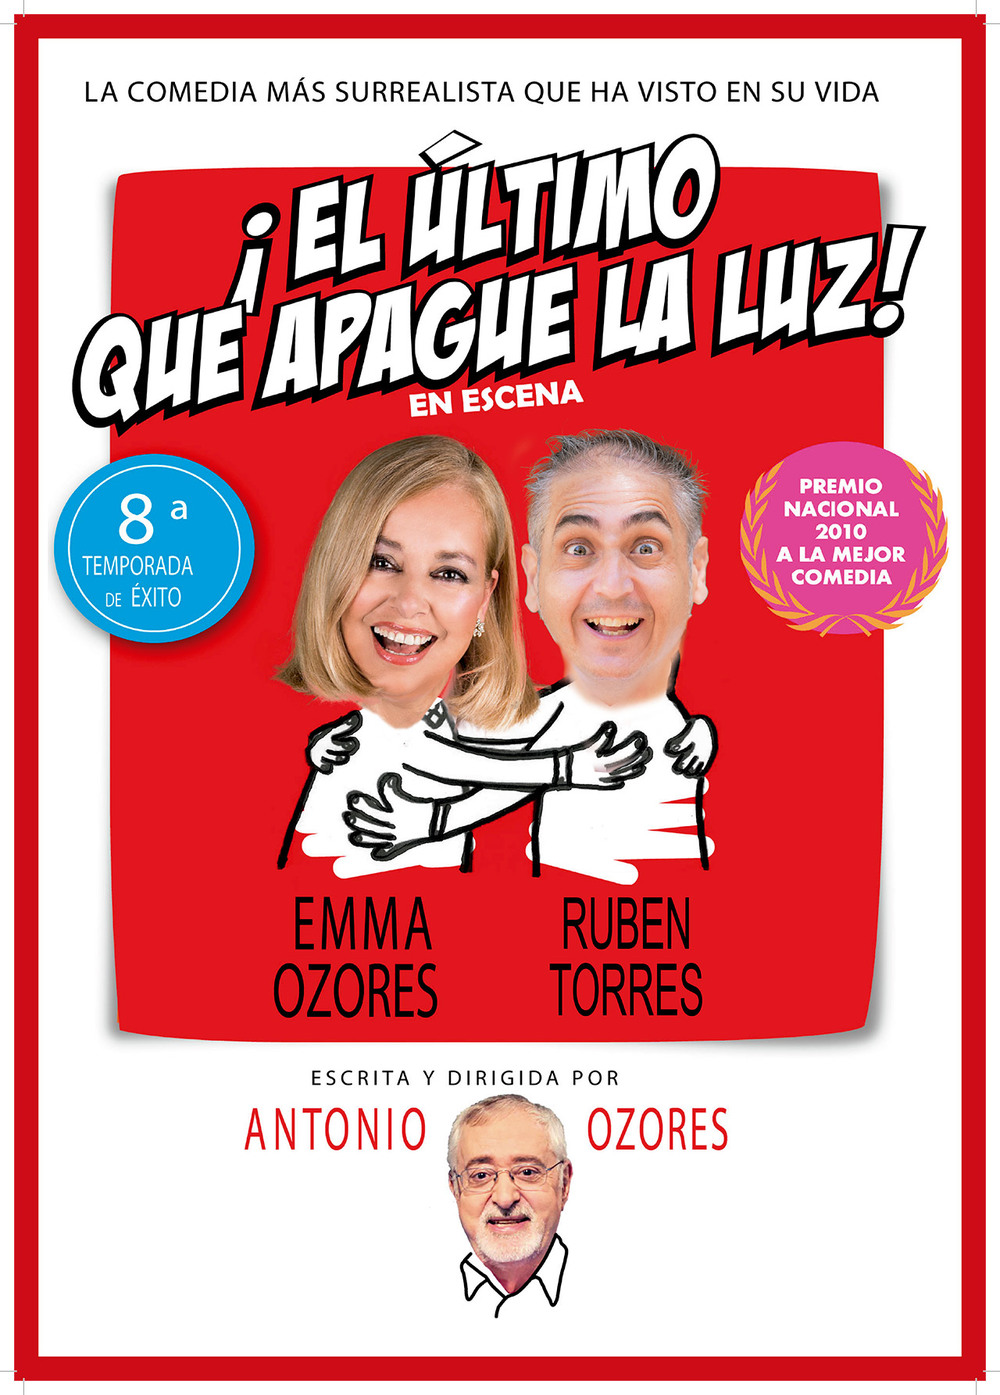 Comedia El ltimo que apague la luz!, escrita por Antonio Ozores